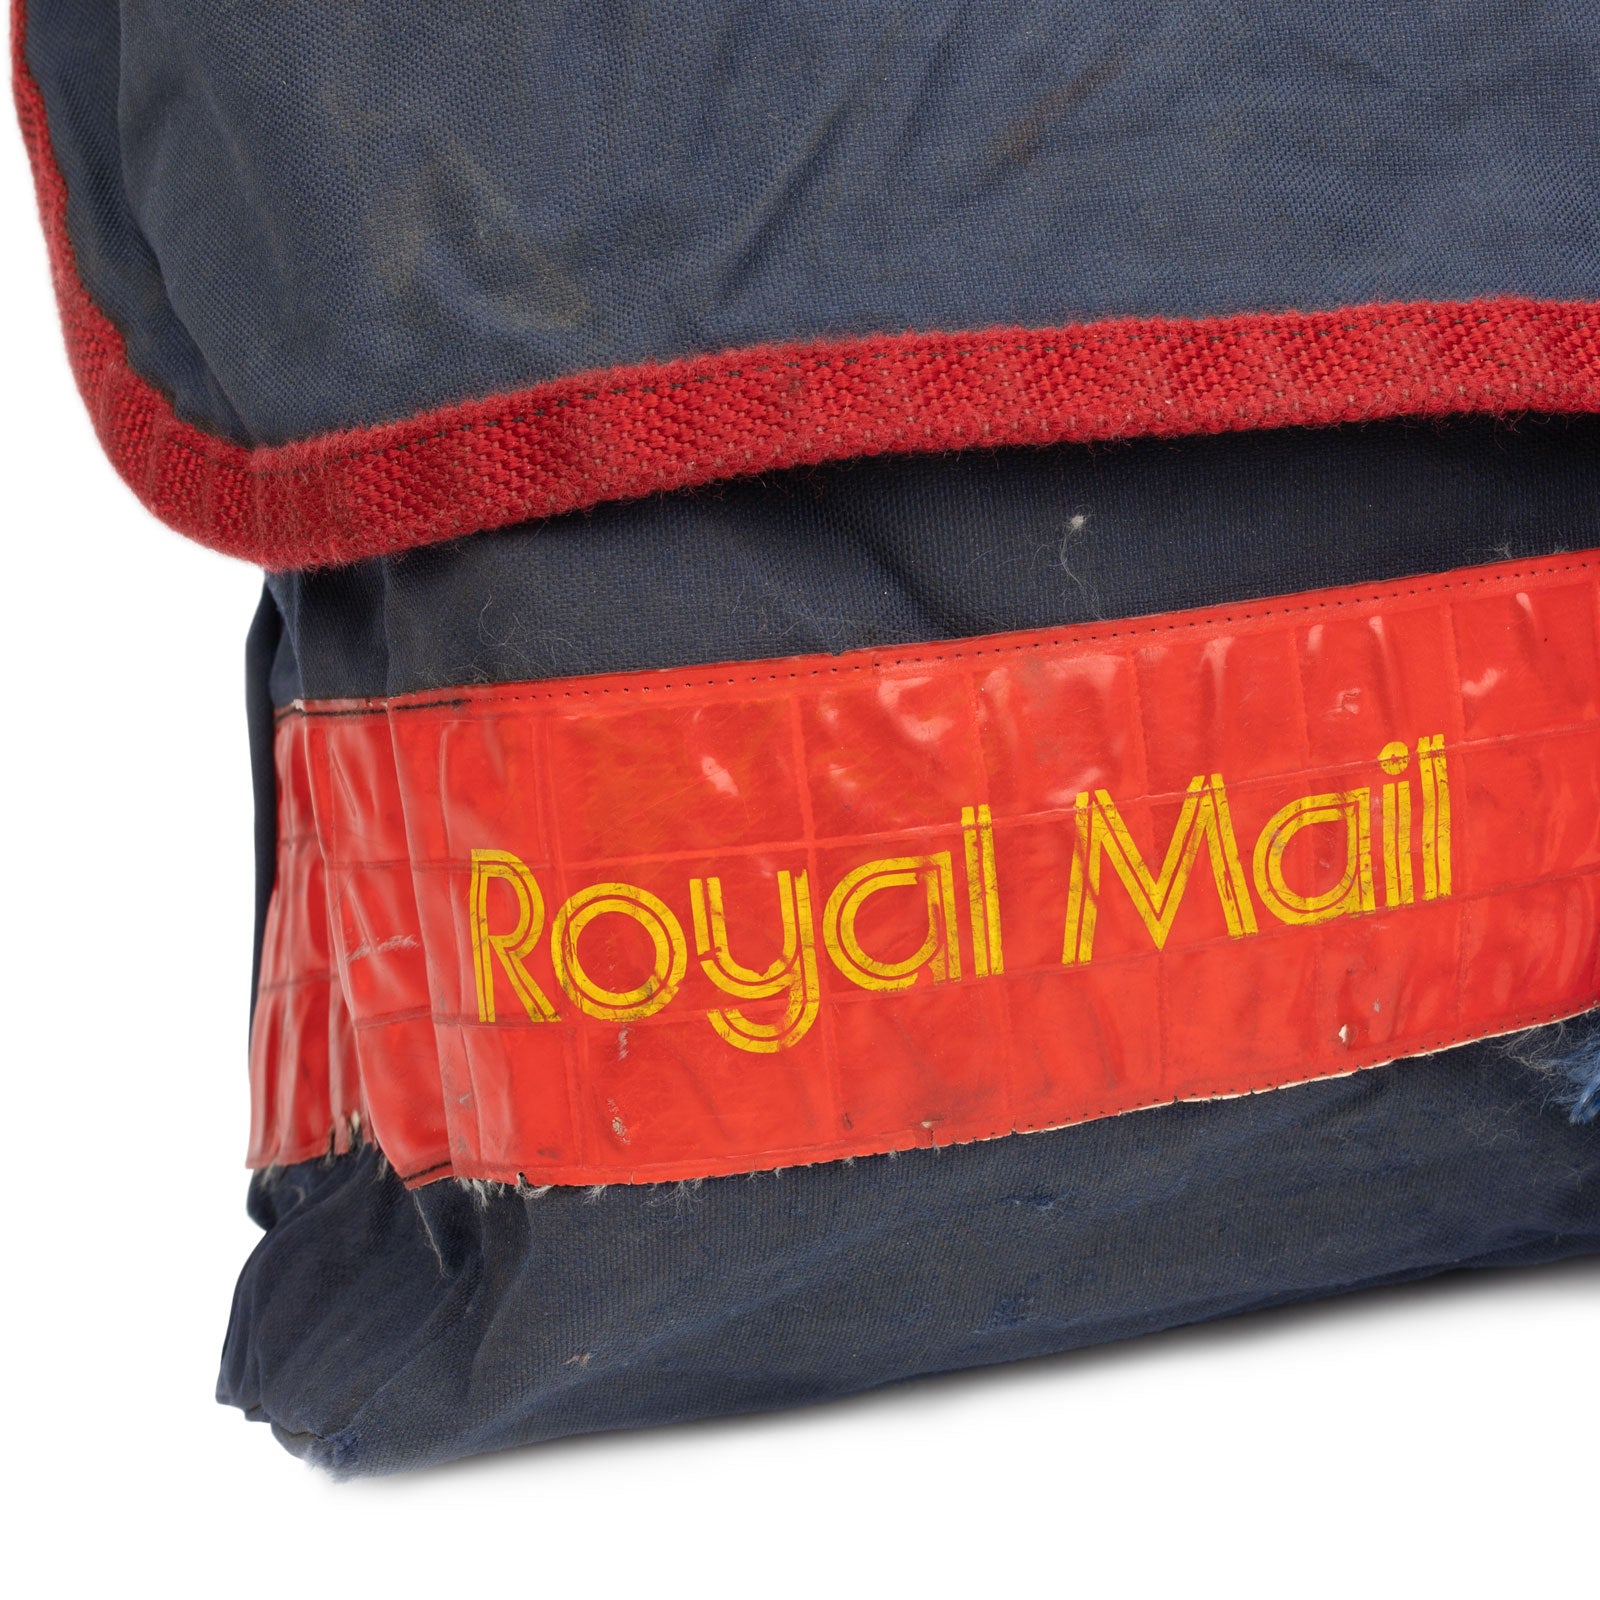 British Royal Mail Bag Blue Logo